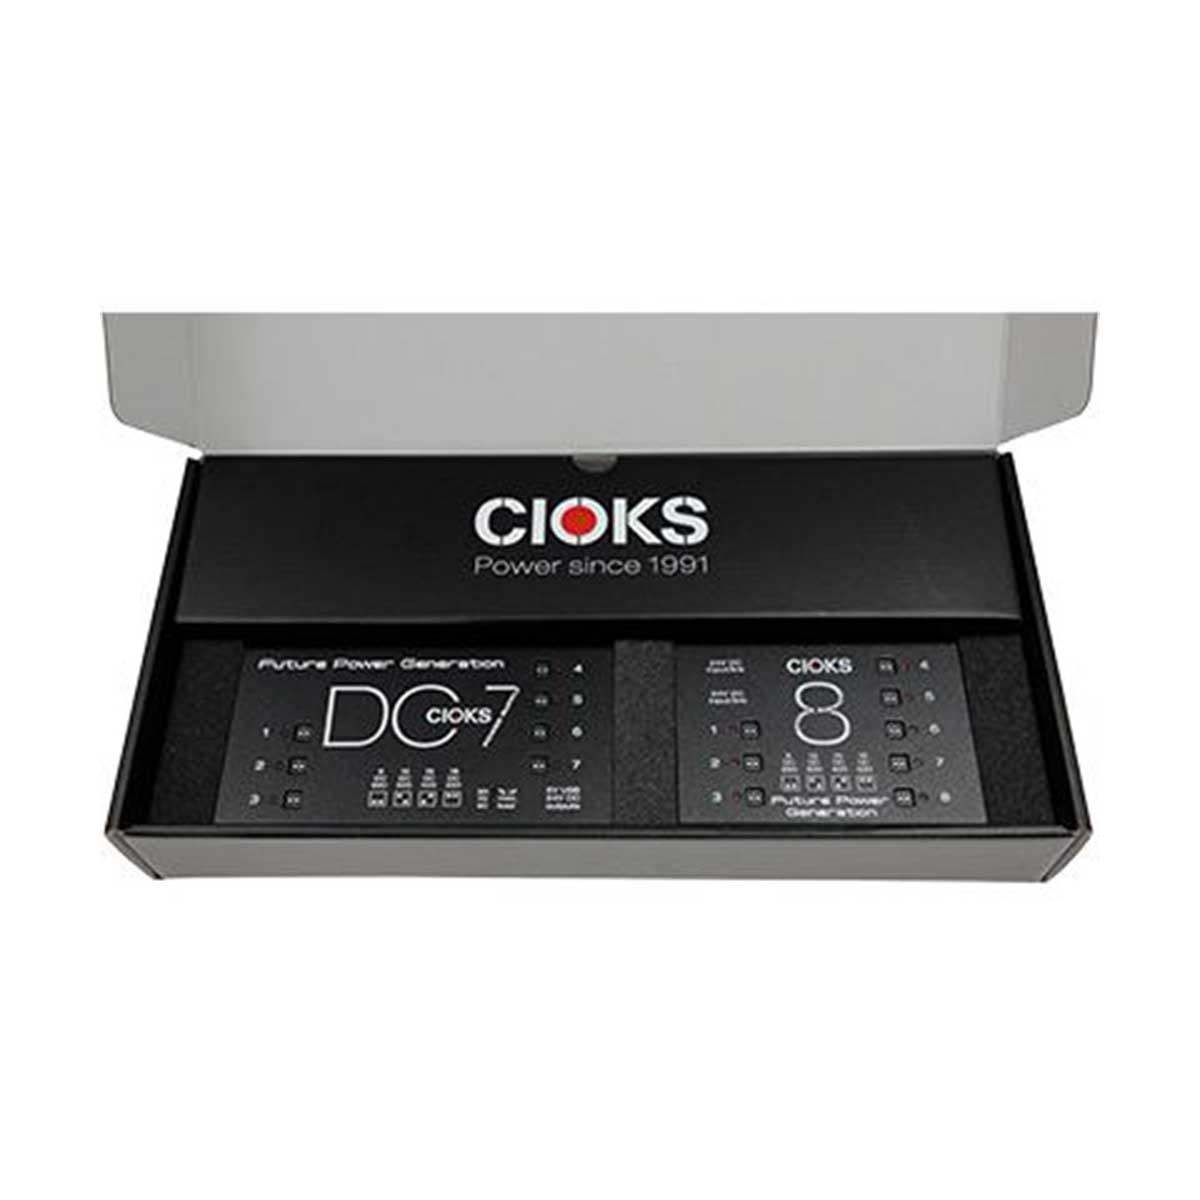 CIOKS Superpower Bundle - DC7 & C8 Gift Box